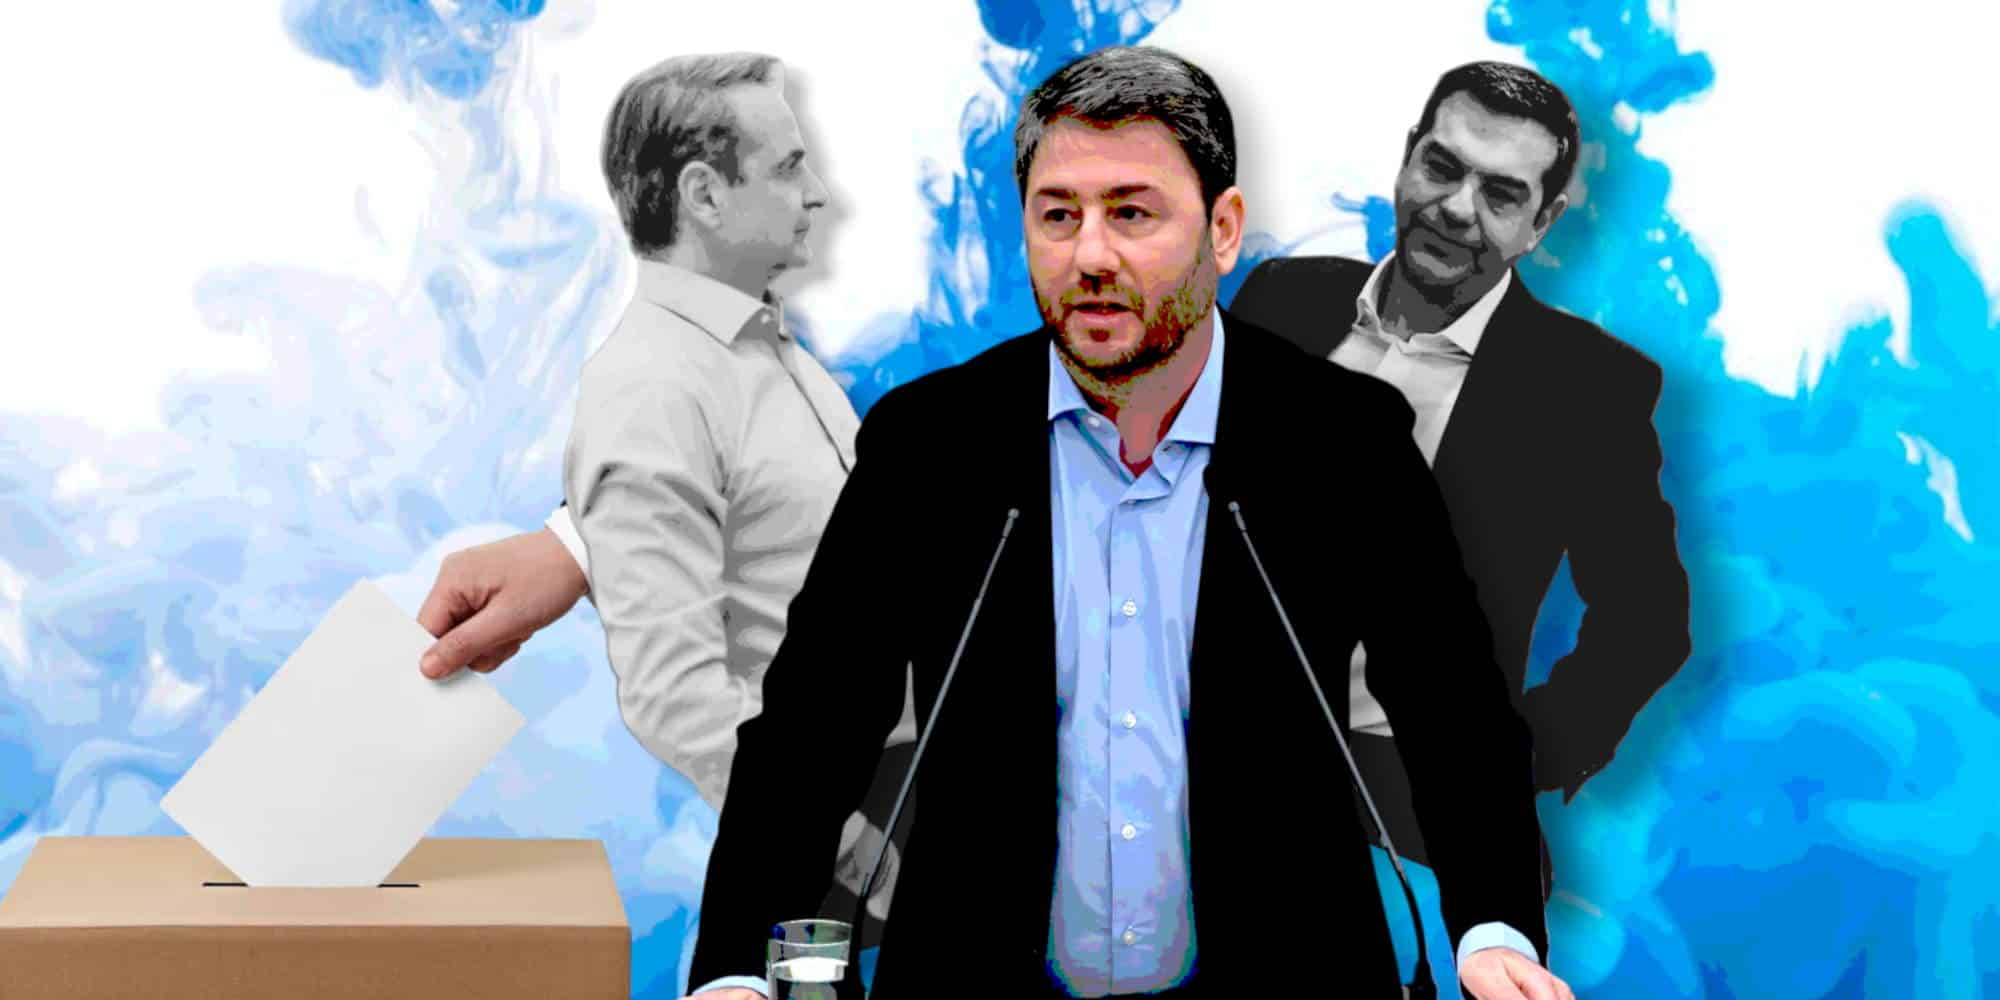 Ο Νίκος Ανδρουλάκης και οι Τσίπρας και Μητσοτάκης στον δρόμο για τις κάλπες